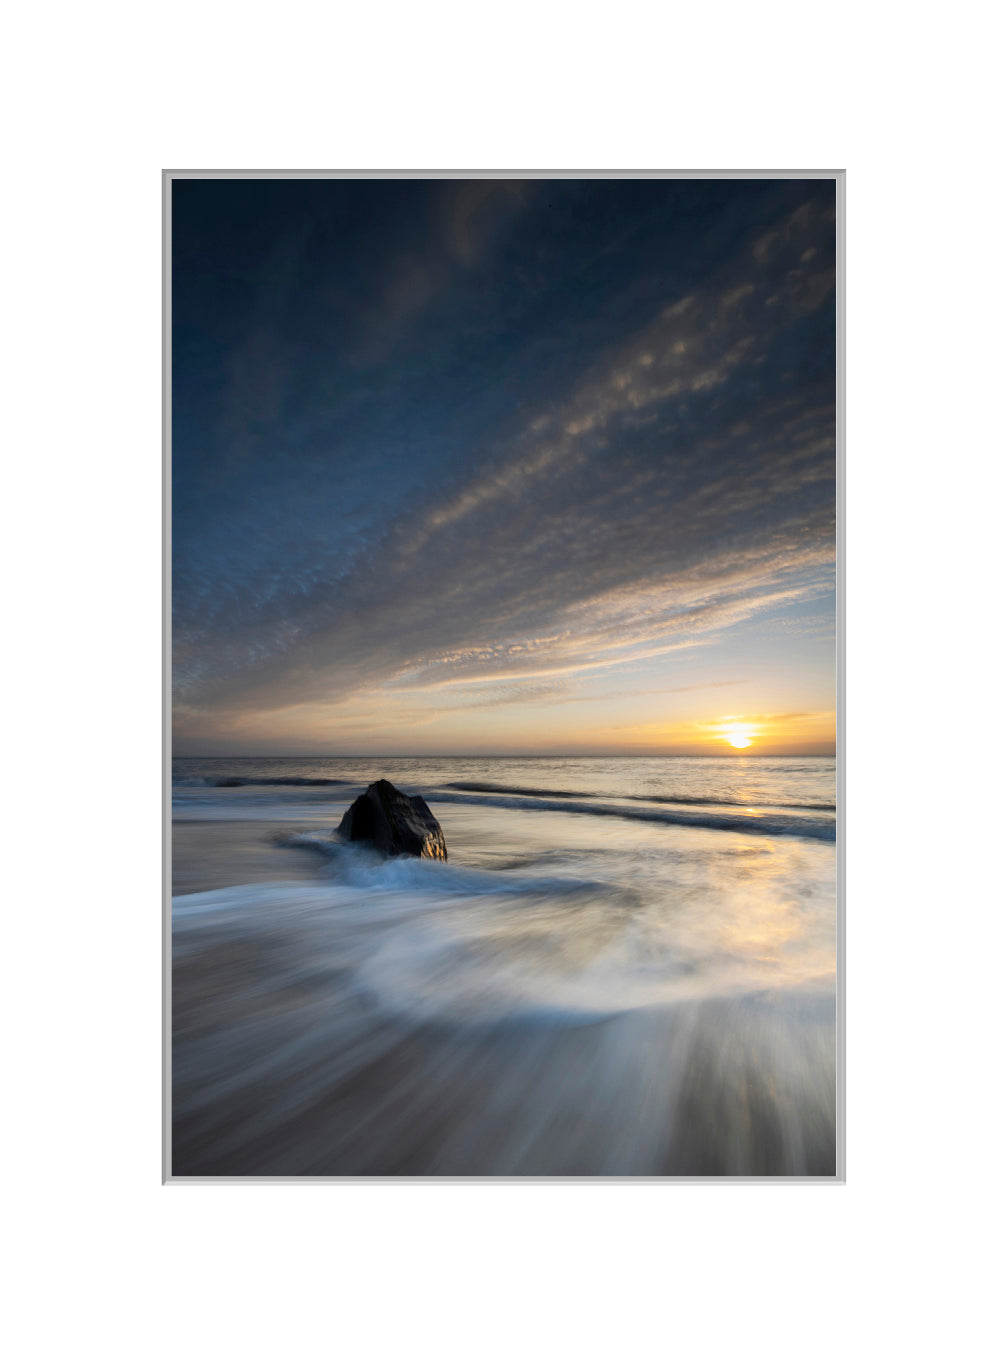 November Sunrise, Clone, Co. Wexford - A4 print